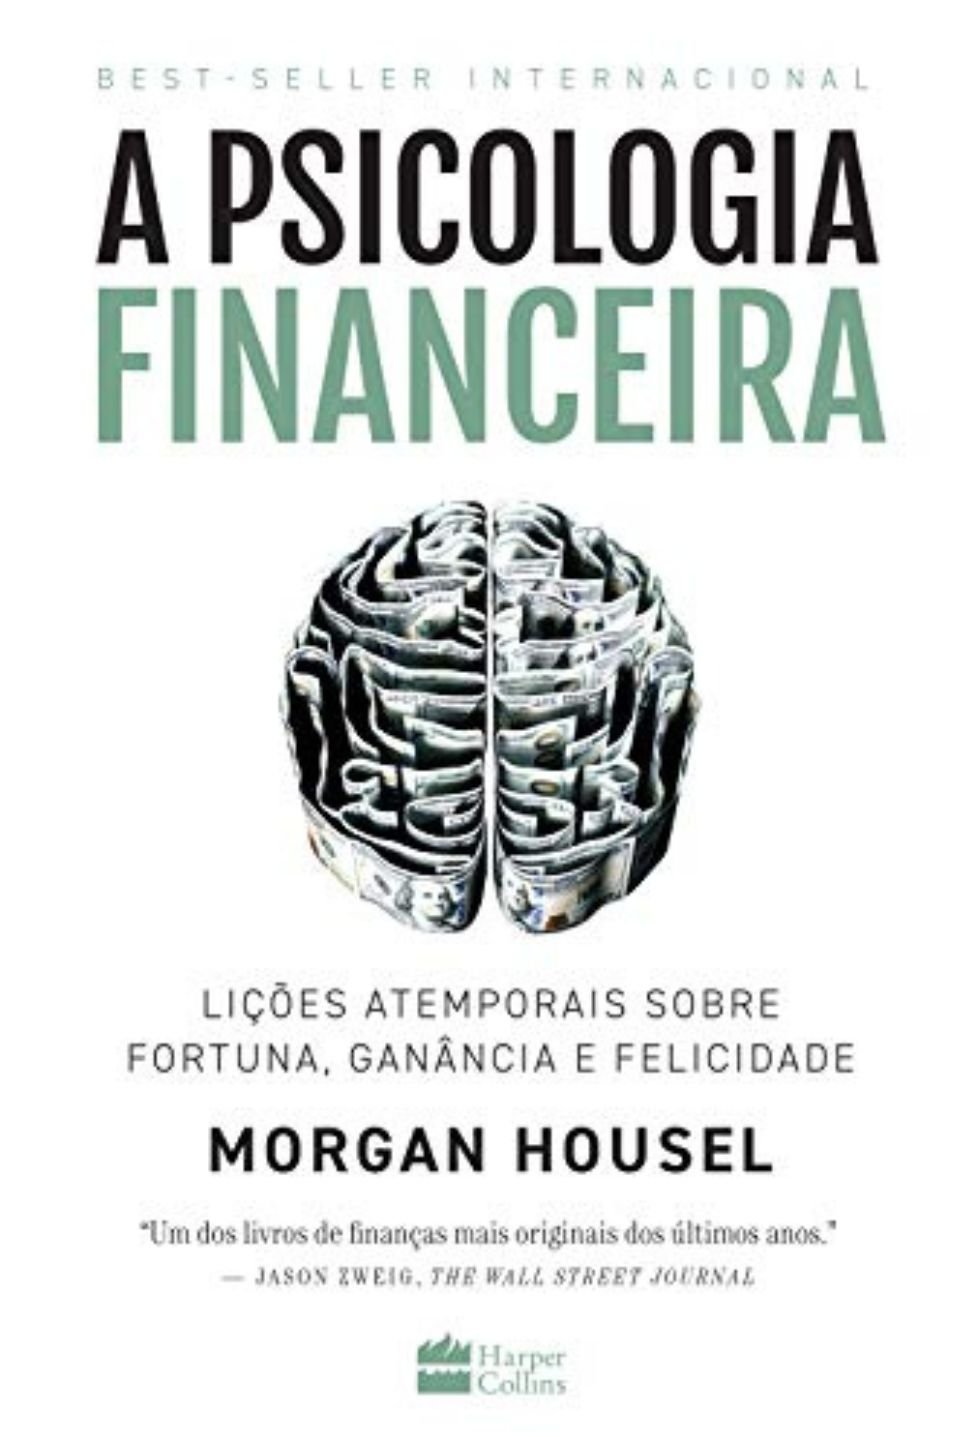 A Psicologia Financeira Morgan housel